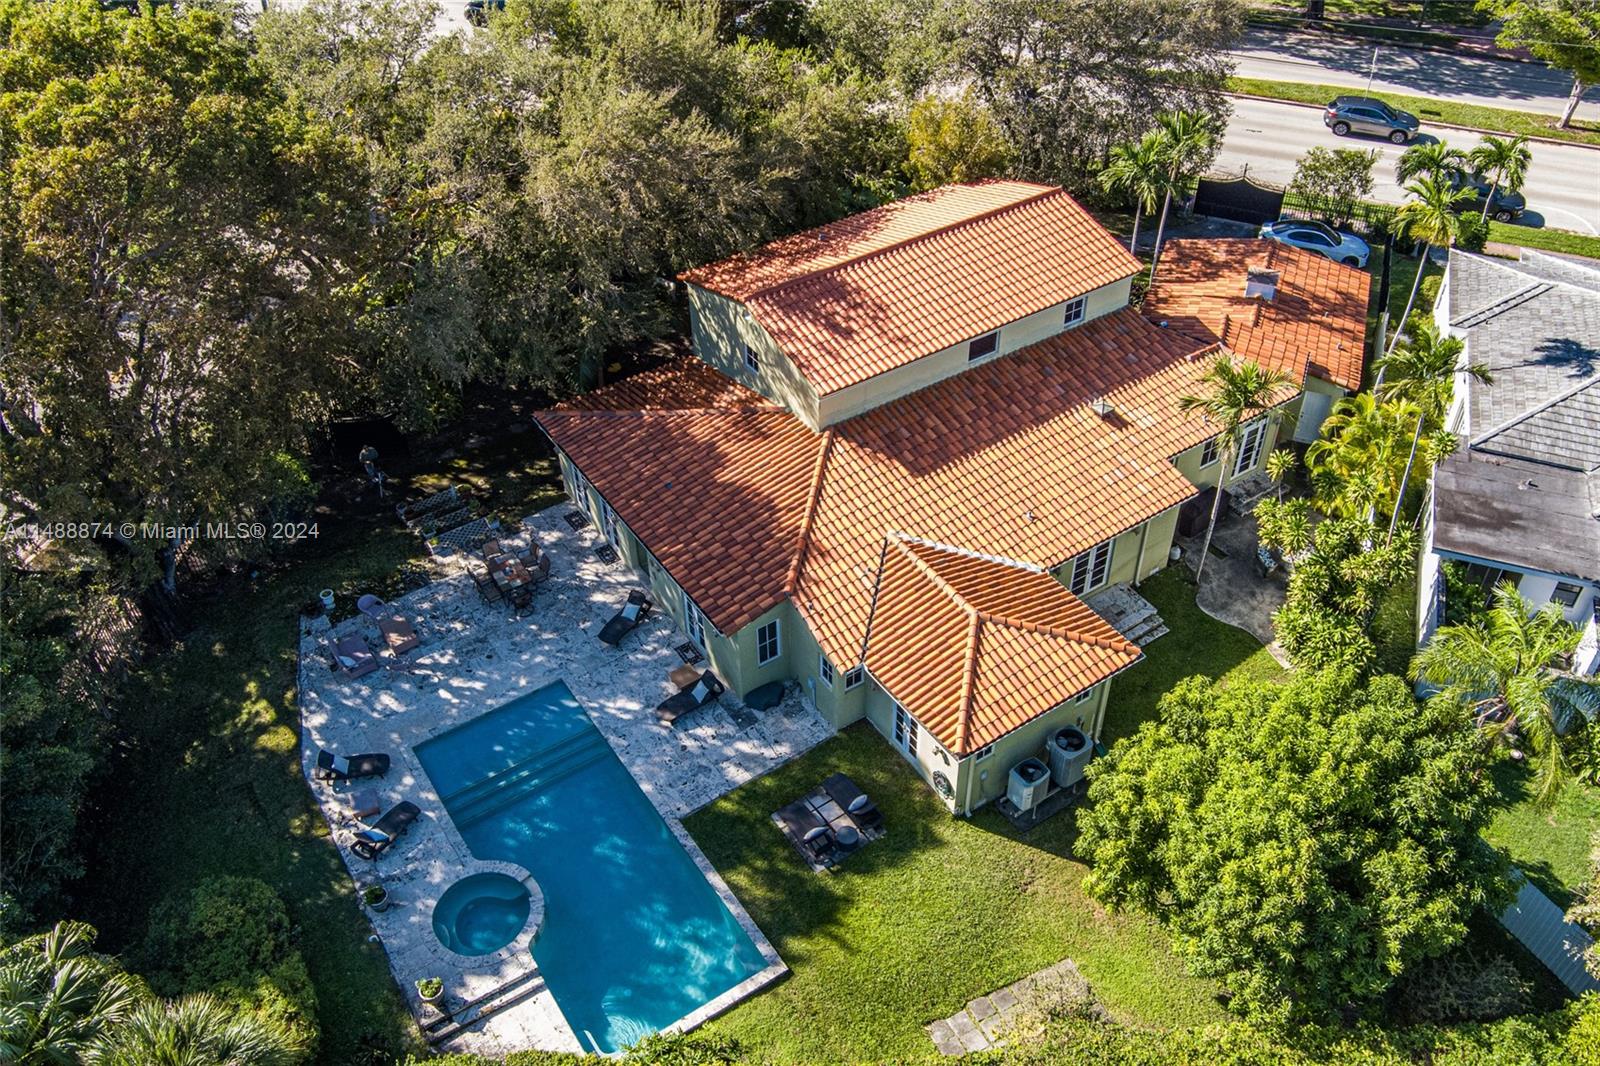 Property for Sale at 5101 Alton Rd Rd, Miami Beach, Miami-Dade County, Florida - Bedrooms: 5 
Bathrooms: 5  - $3,900,000